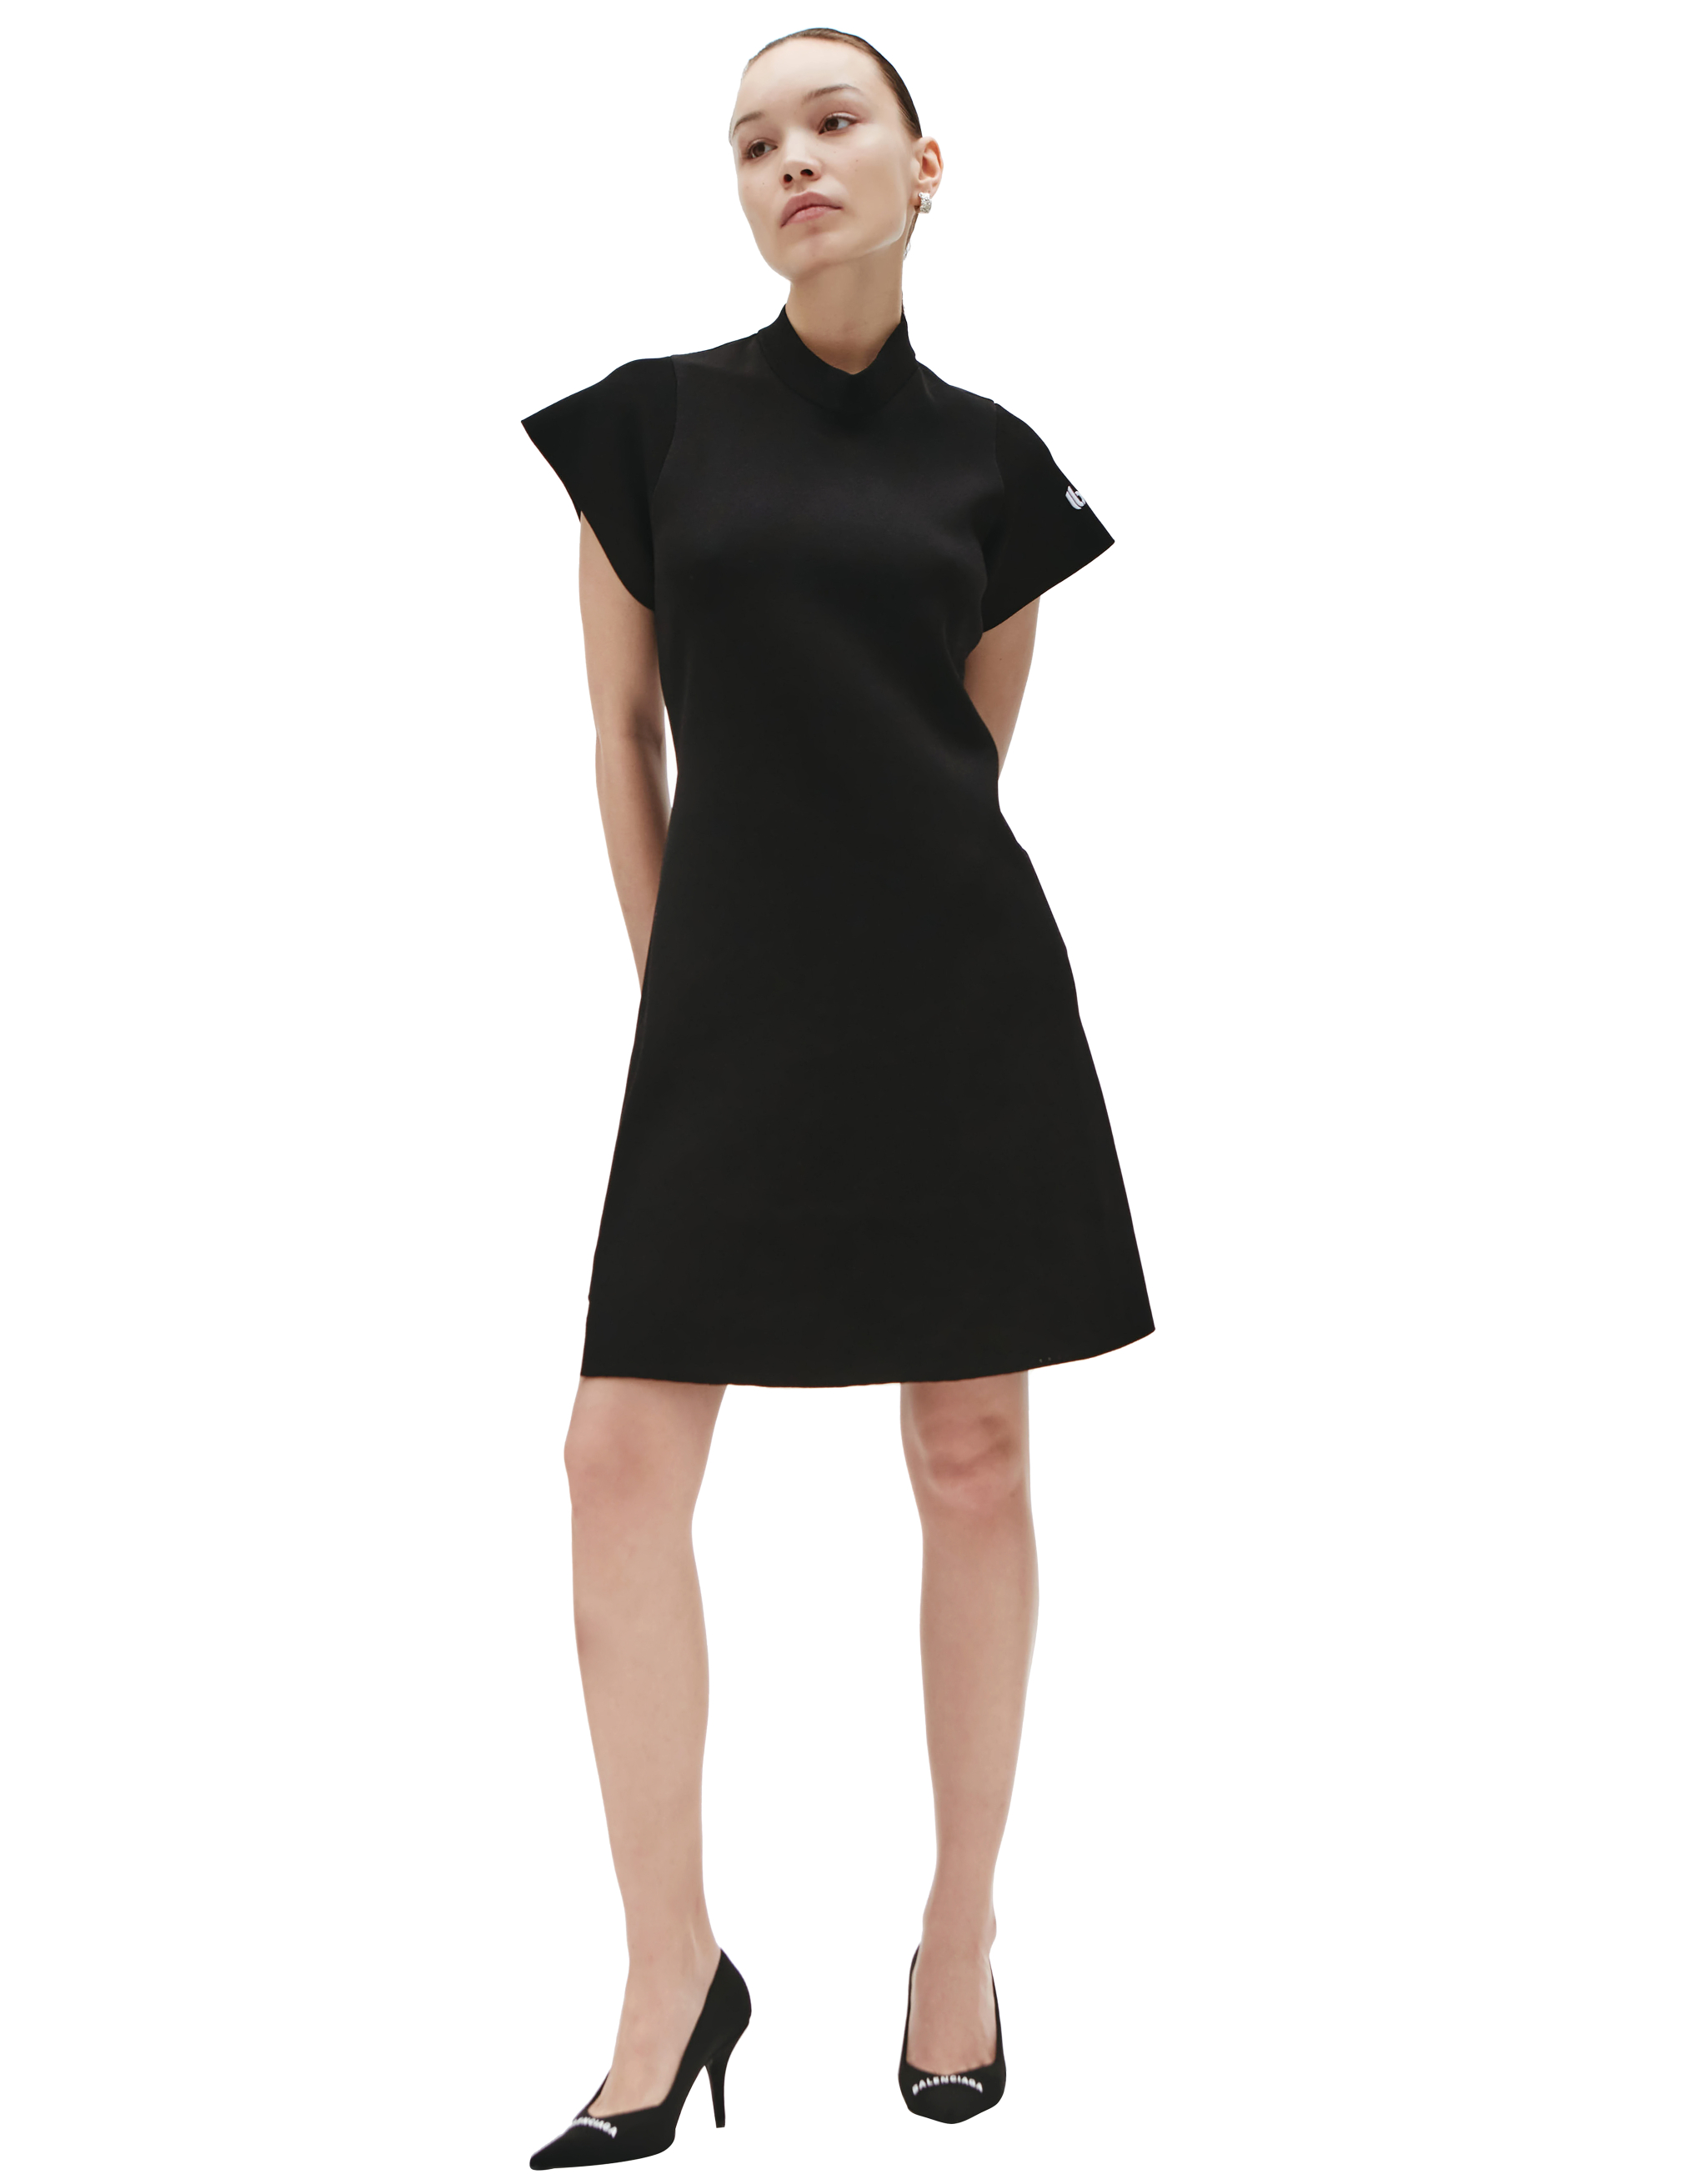 Эластичное платье-мини с контрастным логотипом Balenciaga 681973/T5165/1000, размер S;M;L 681973/T5165/1000 - фото 1